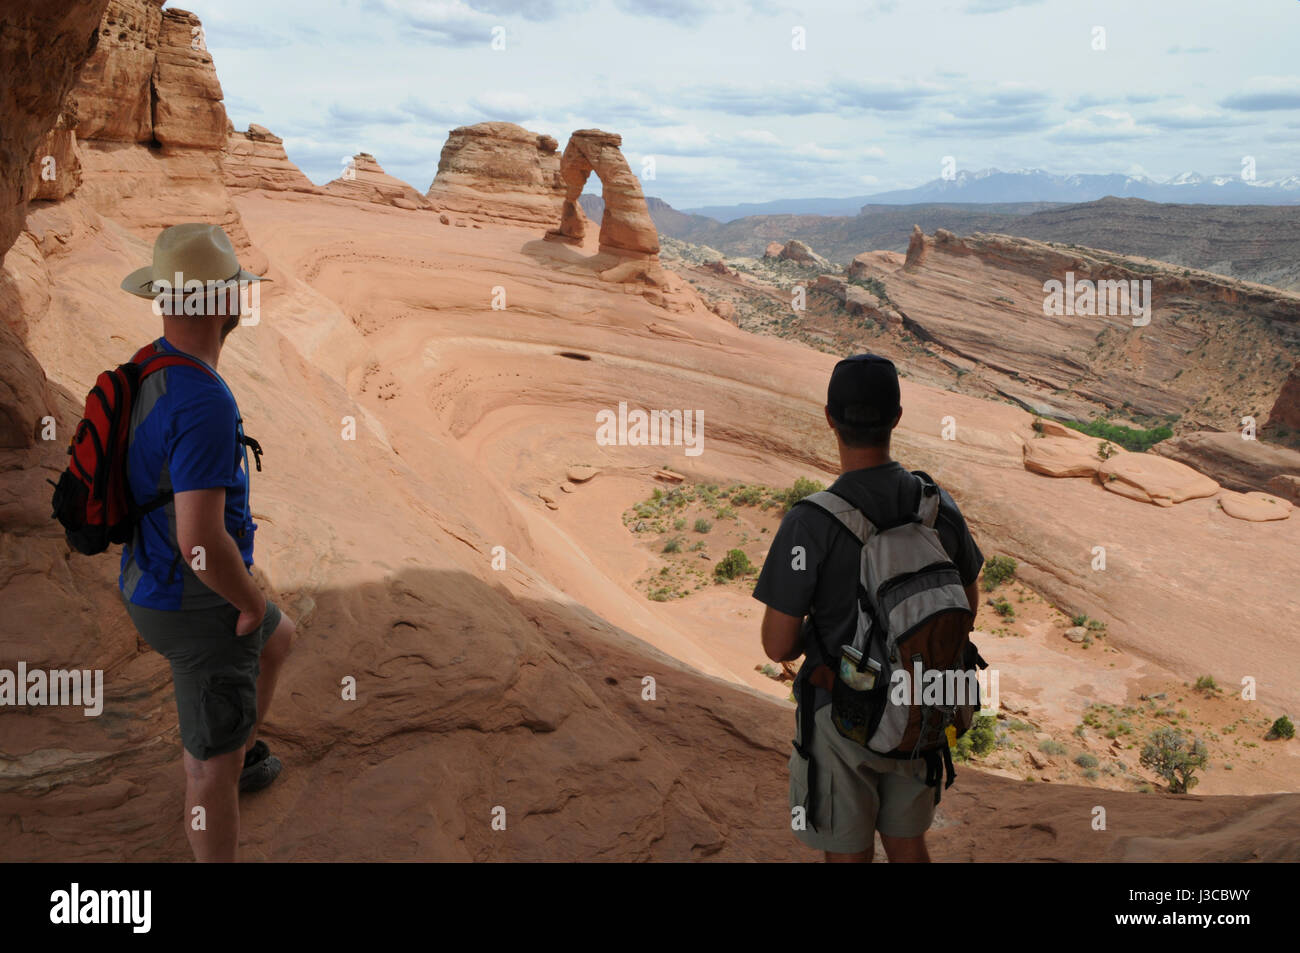 Dos excursionistas mirar hacia el arco delicado en Arches National Park, Moab, Utah. Éstas son las dos únicas personas disfrutando de esta visión expansiva. Foto de stock